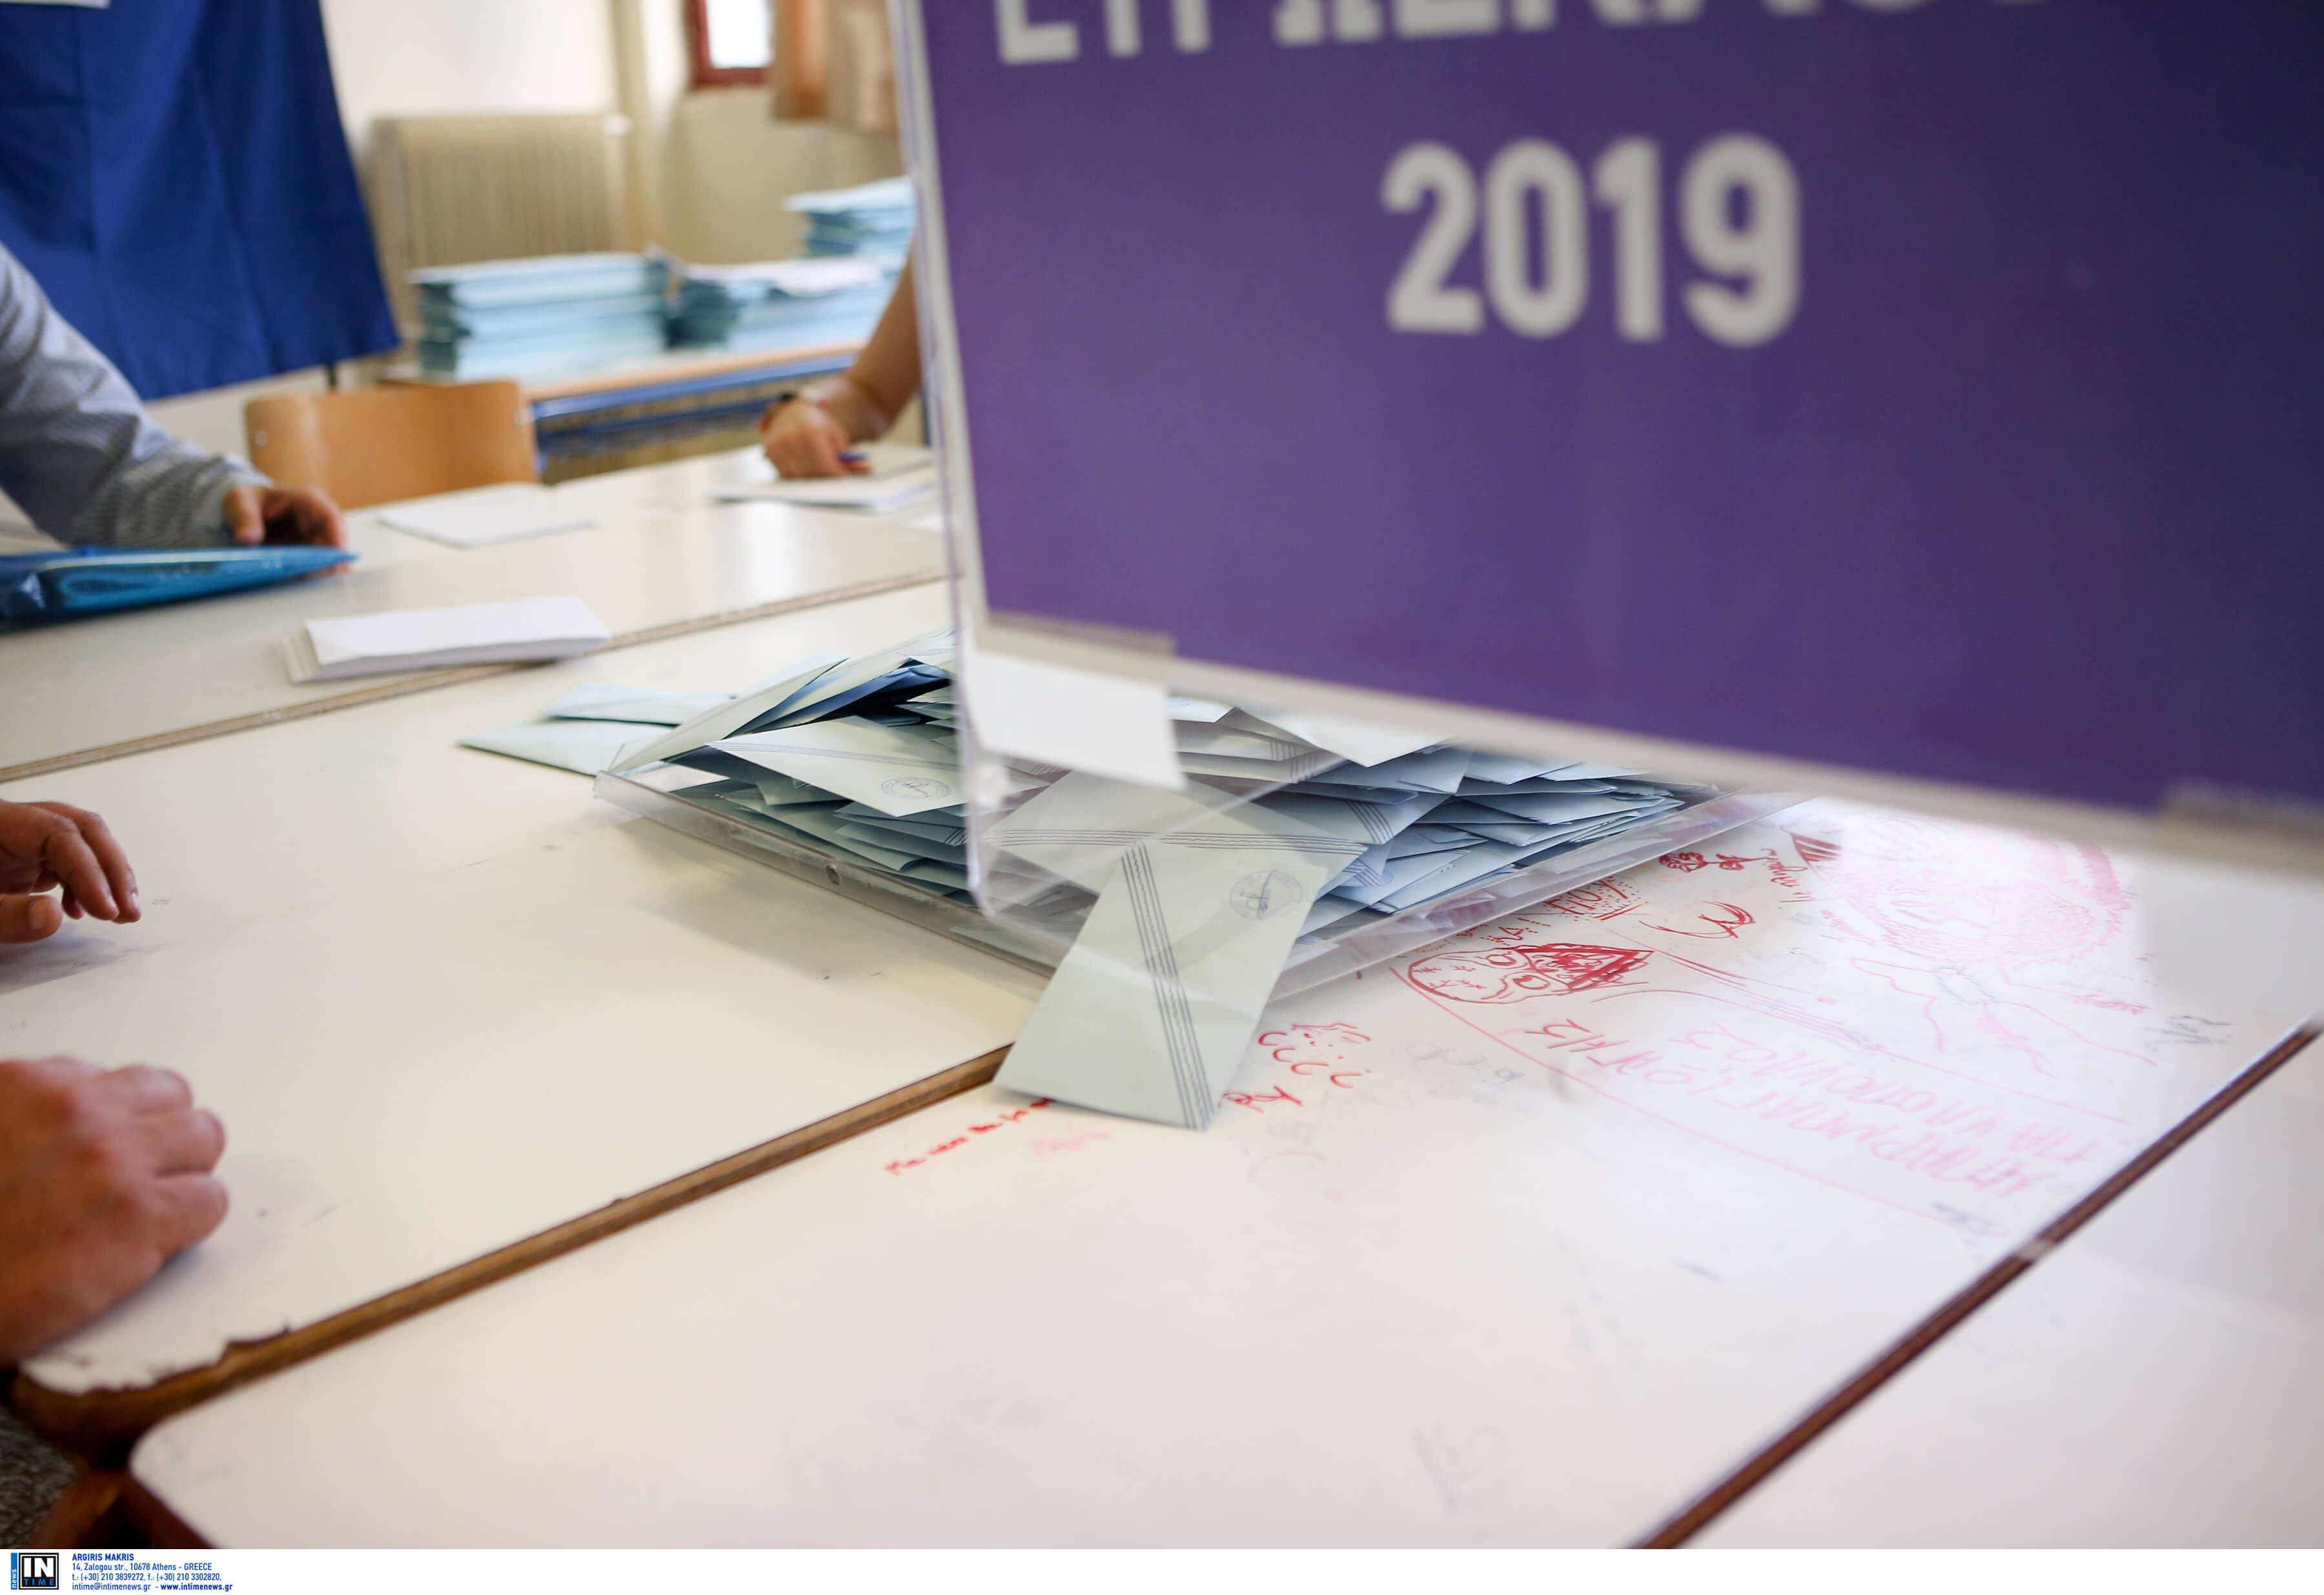 Εκλογές 2019: Οι υποψήφιοι βουλευτές Ευβοιας – Αποτελέσματα εκλογών, ονόματα και κόμματα